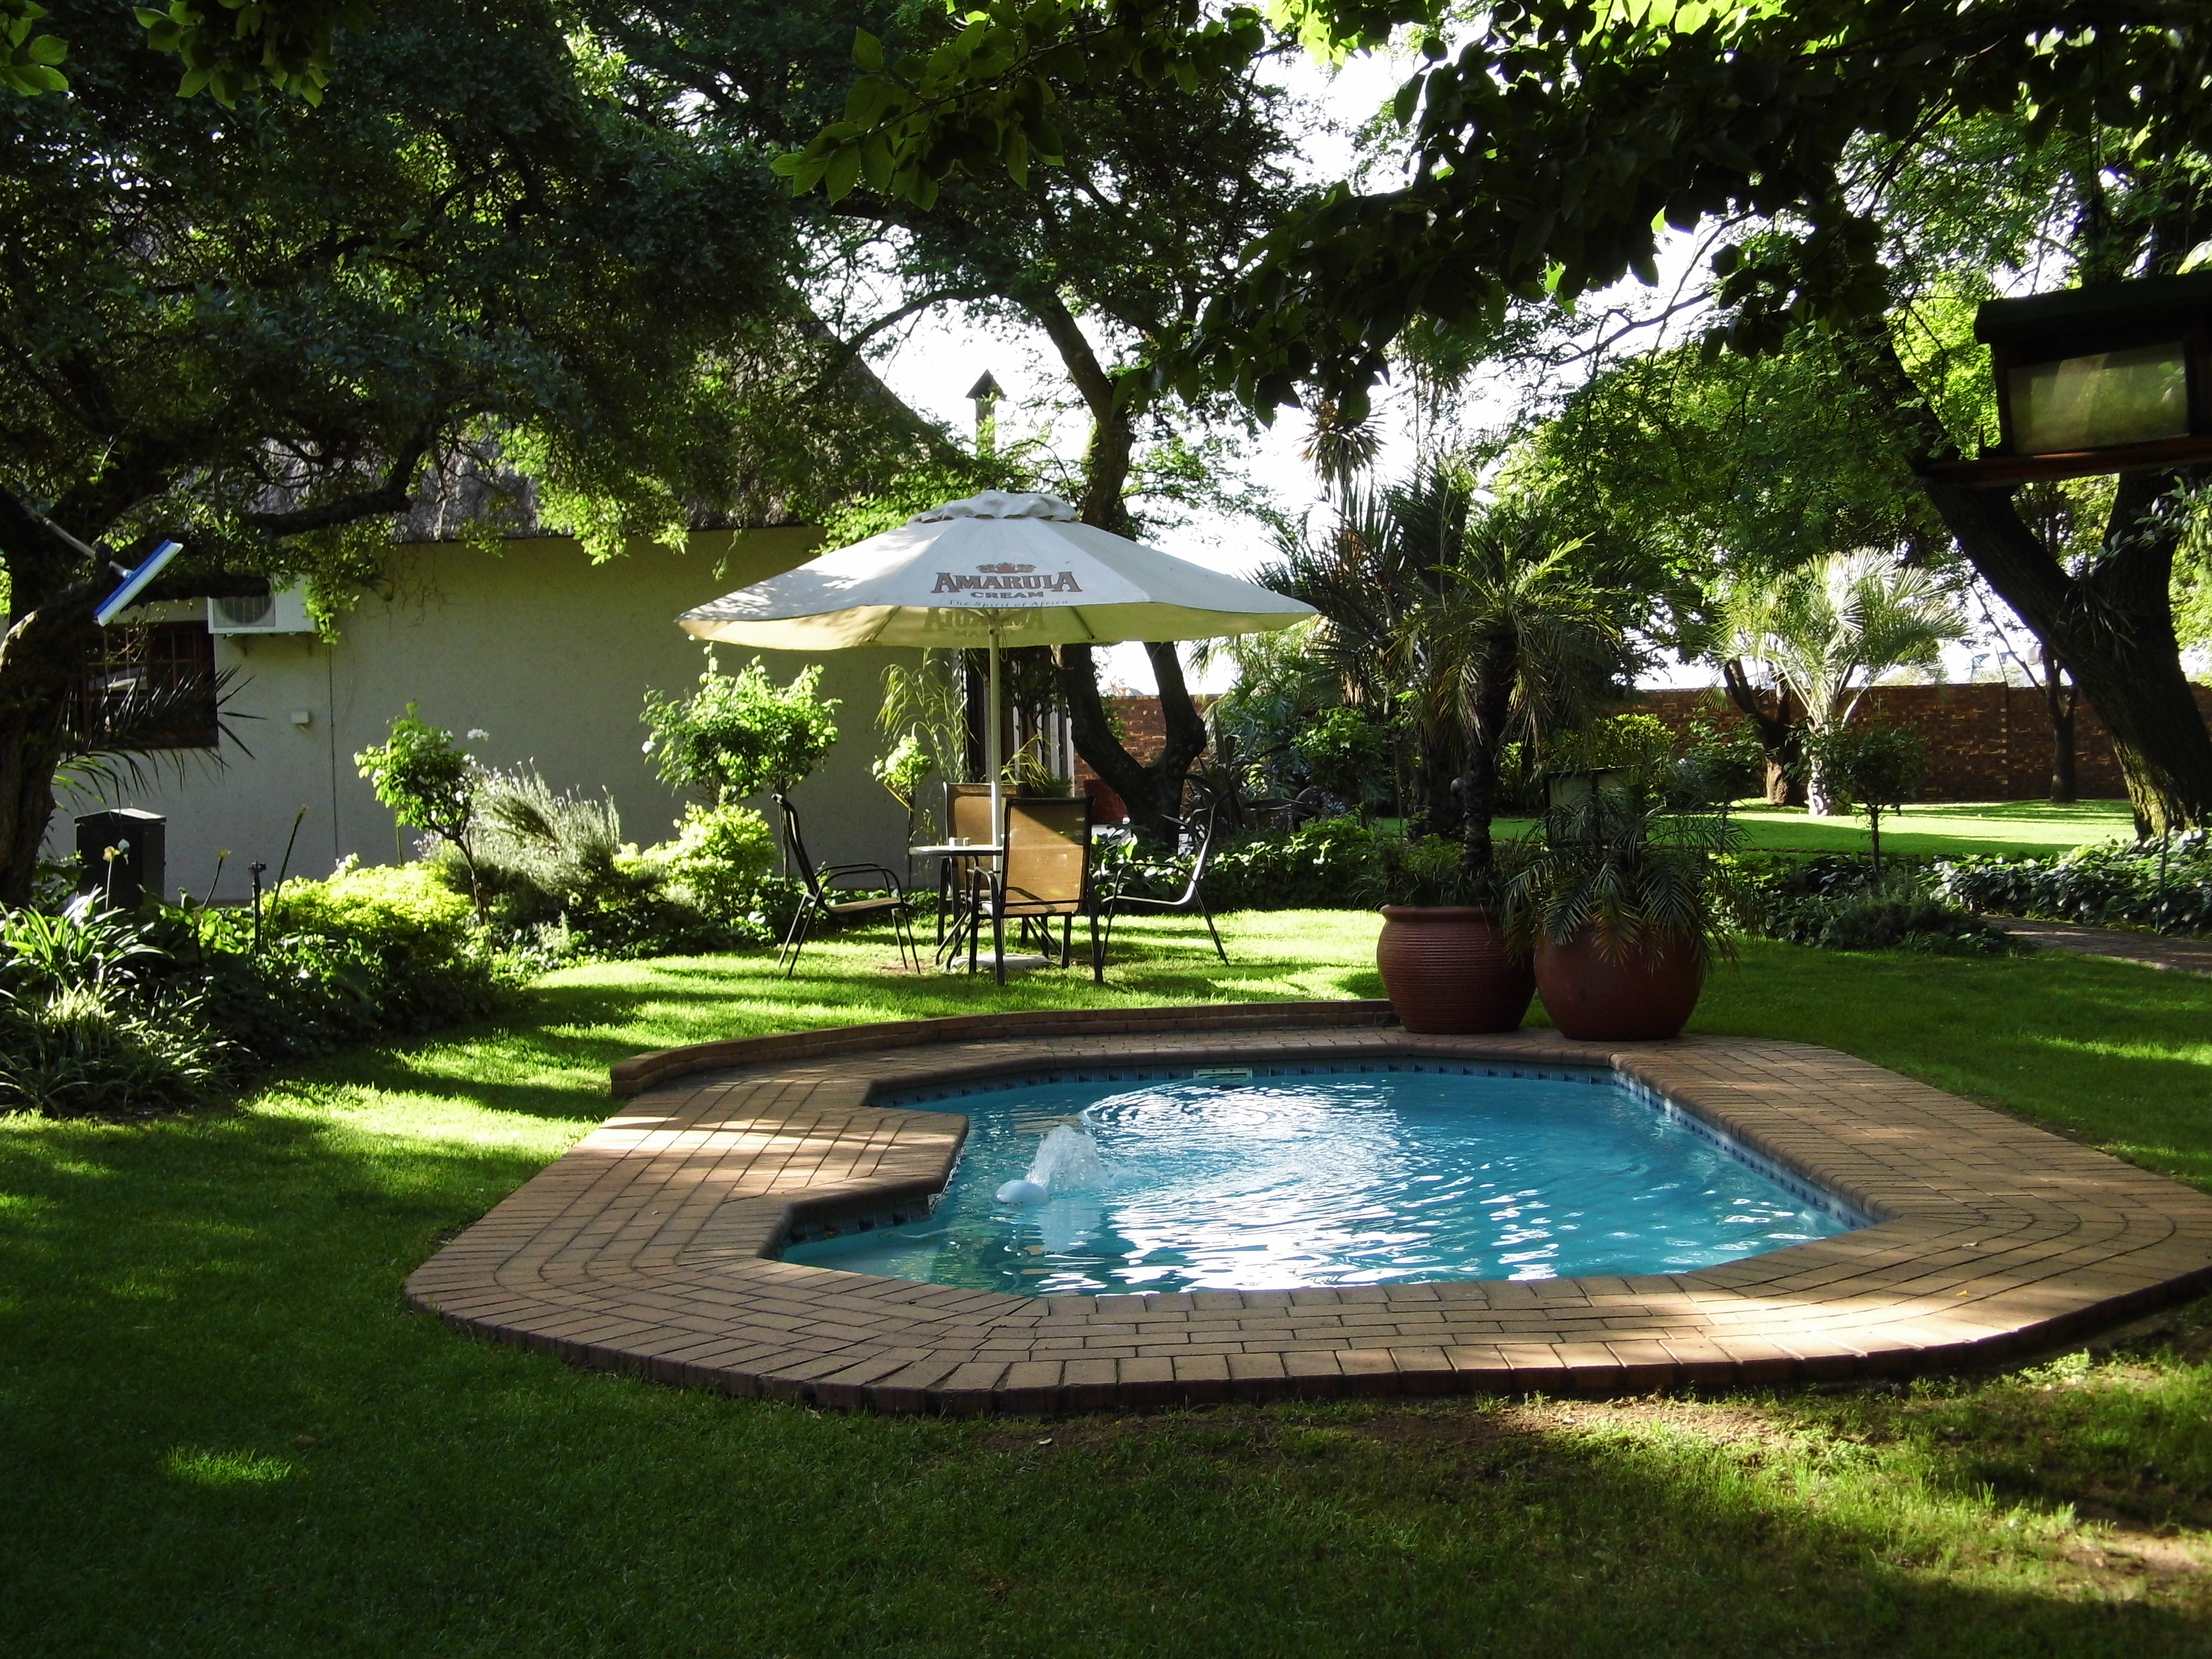 Swimming Pool und Garten in der Großstadt: Safari Hotel Johannesburg nahe Flughafen